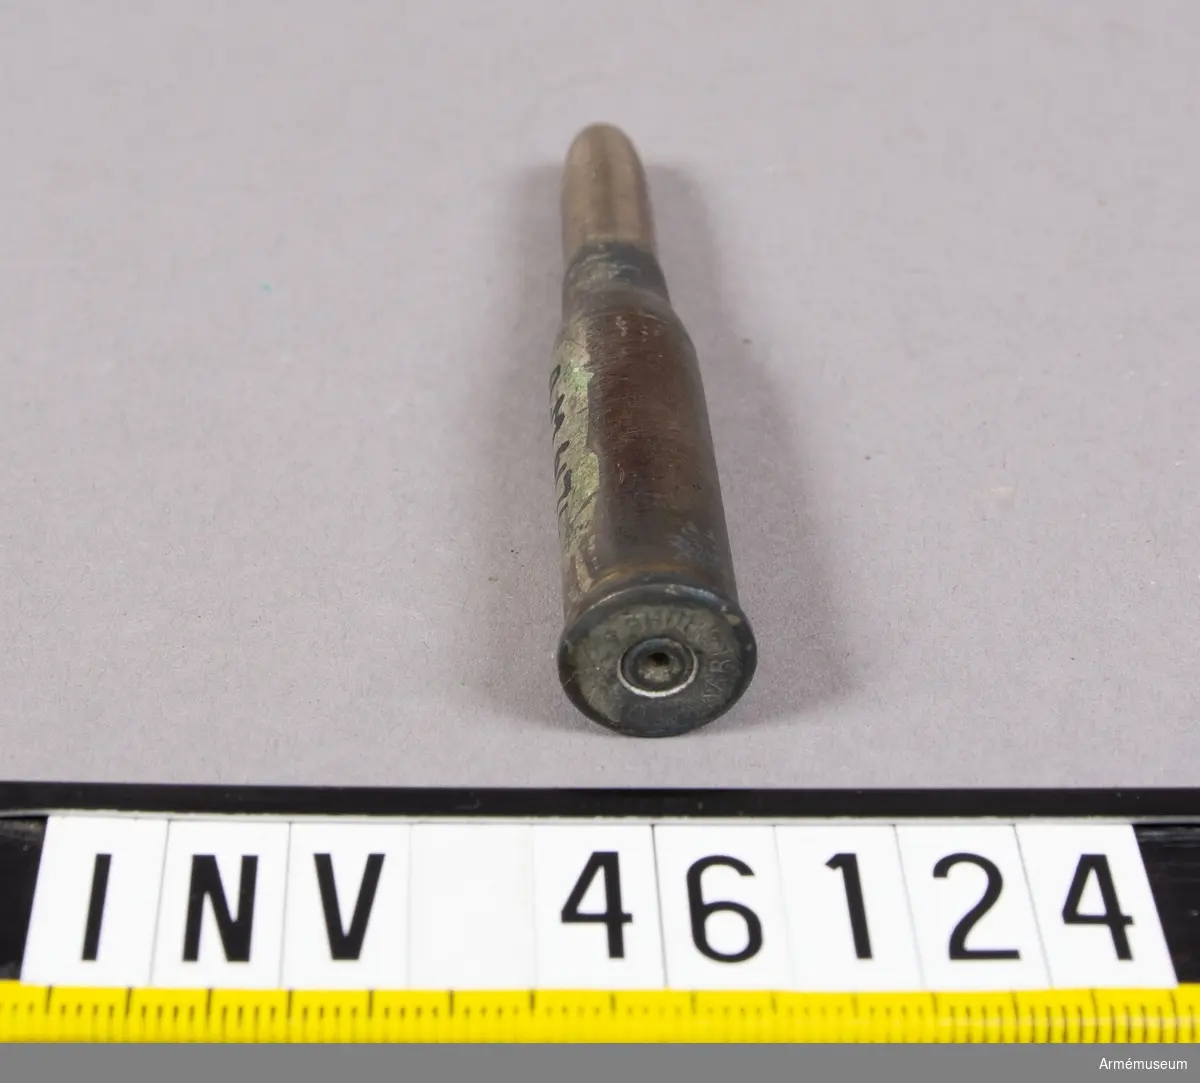 Grupp E V.
Blind patron till gevär av överste W. Bergmans år 1888 projekterat 8 mm magasinsgevär.